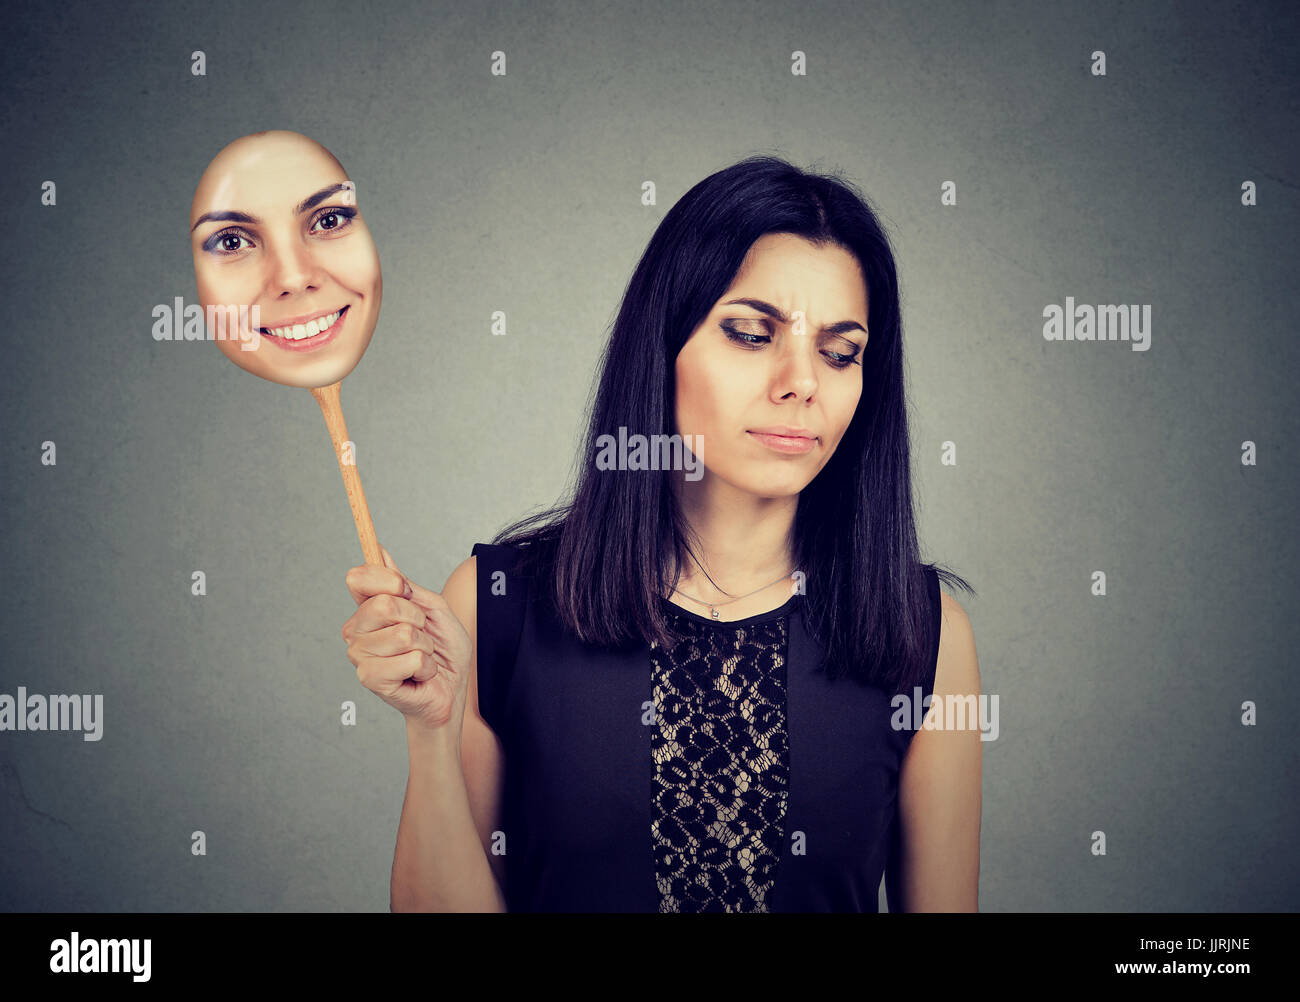 Junge Frau mit traurigen Ausdruck einer Maske mit dem Ausdruck ihrer Fröhlichkeit Stockfoto